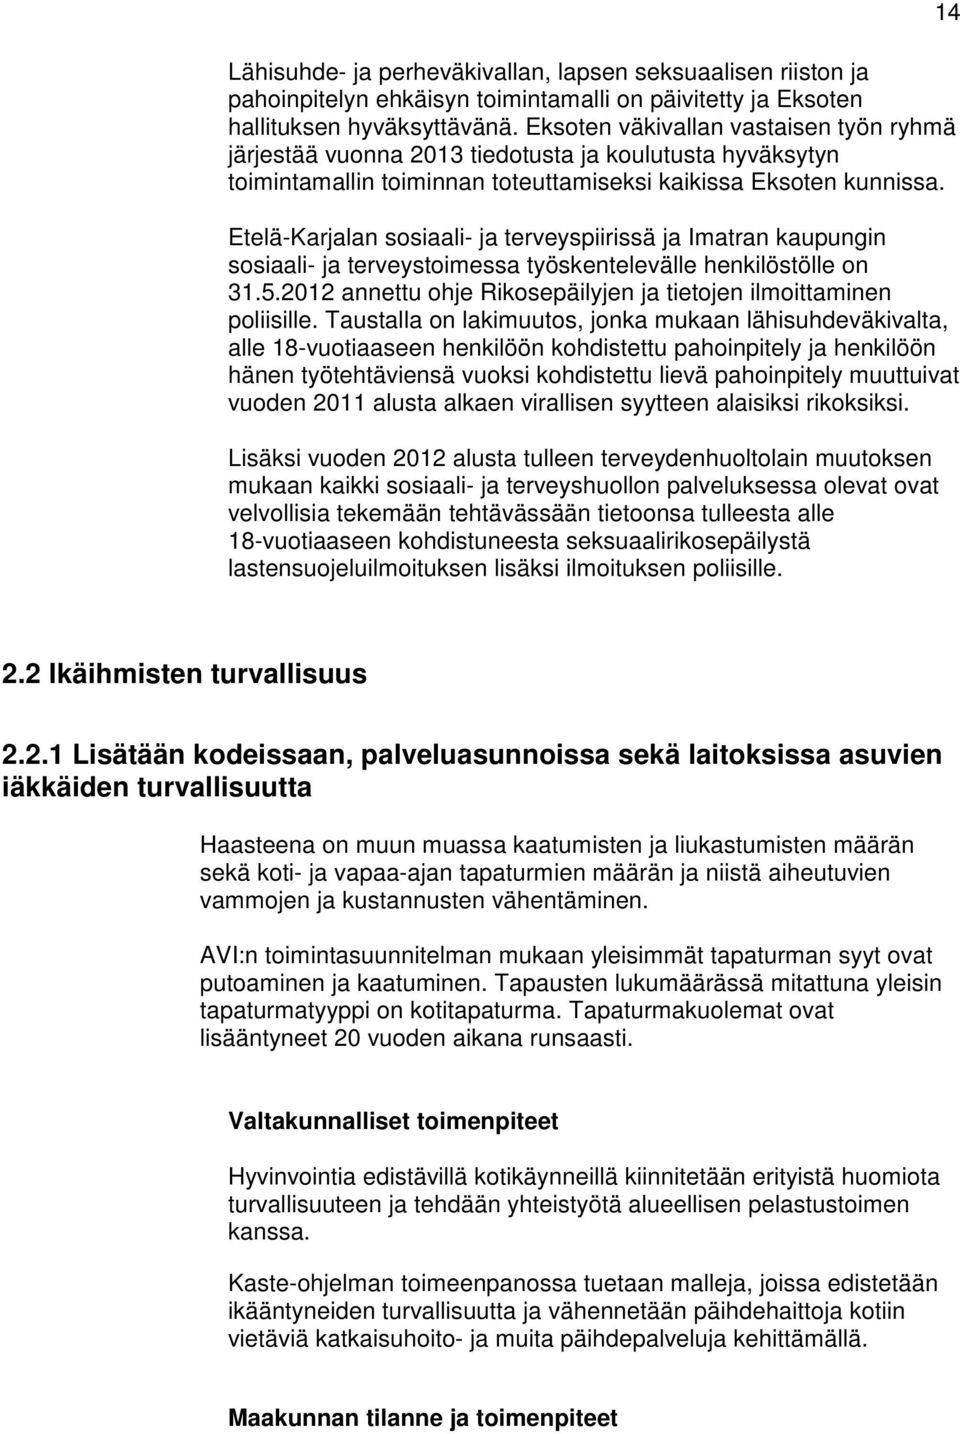 Etelä-Karjalan sosiaali- ja terveyspiirissä ja Imatran kaupungin sosiaali- ja terveystoimessa työskentelevälle henkilöstölle on 31.5.